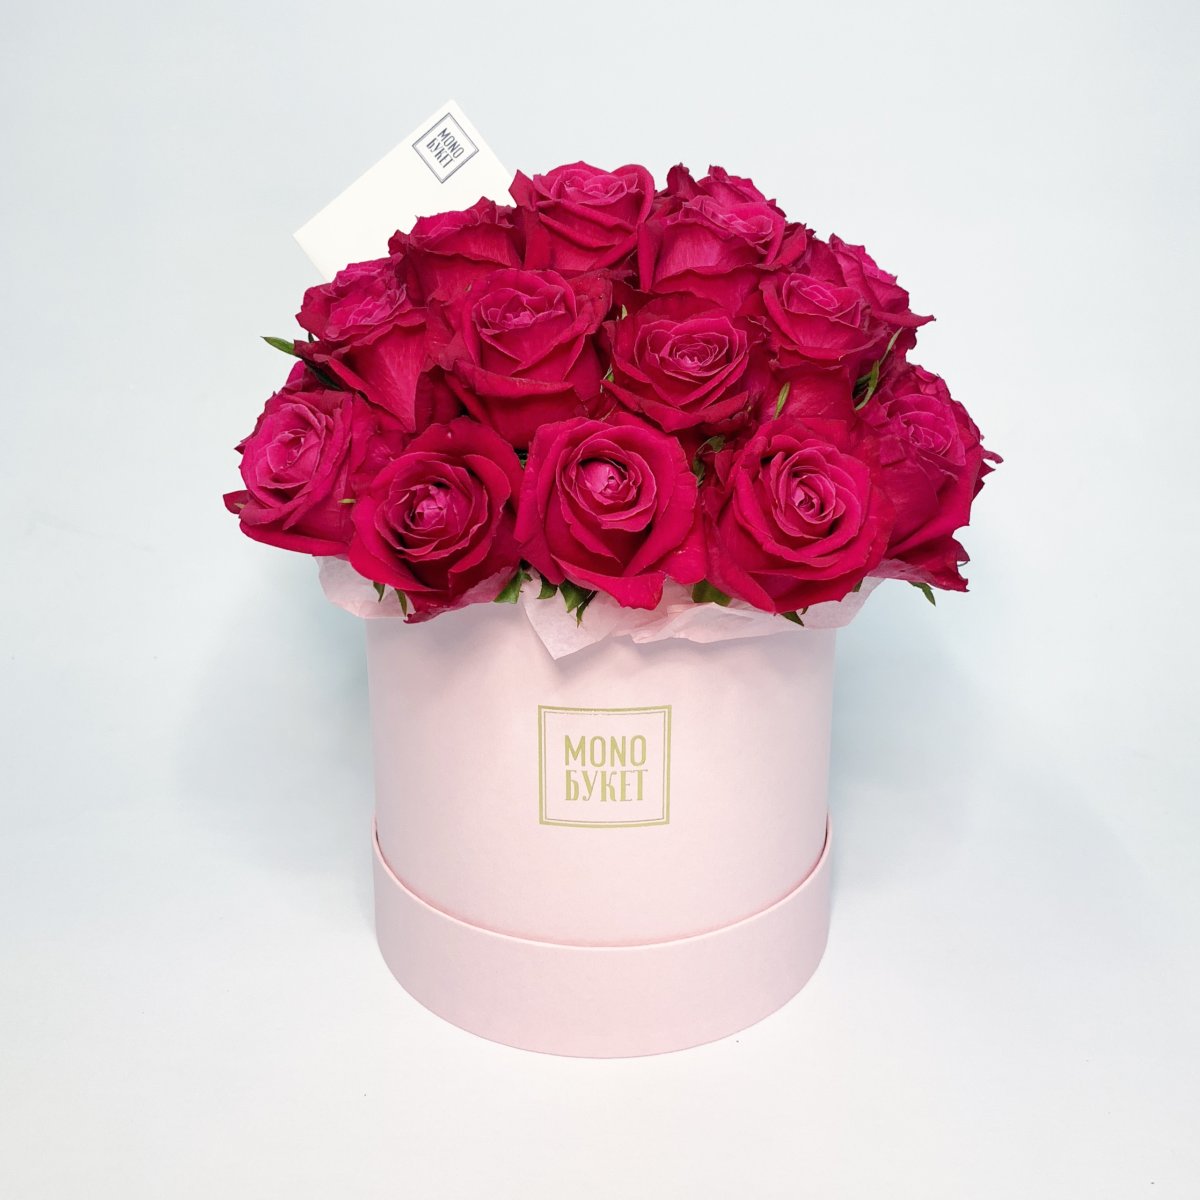 Цветы в розовой коробке (80 фото)